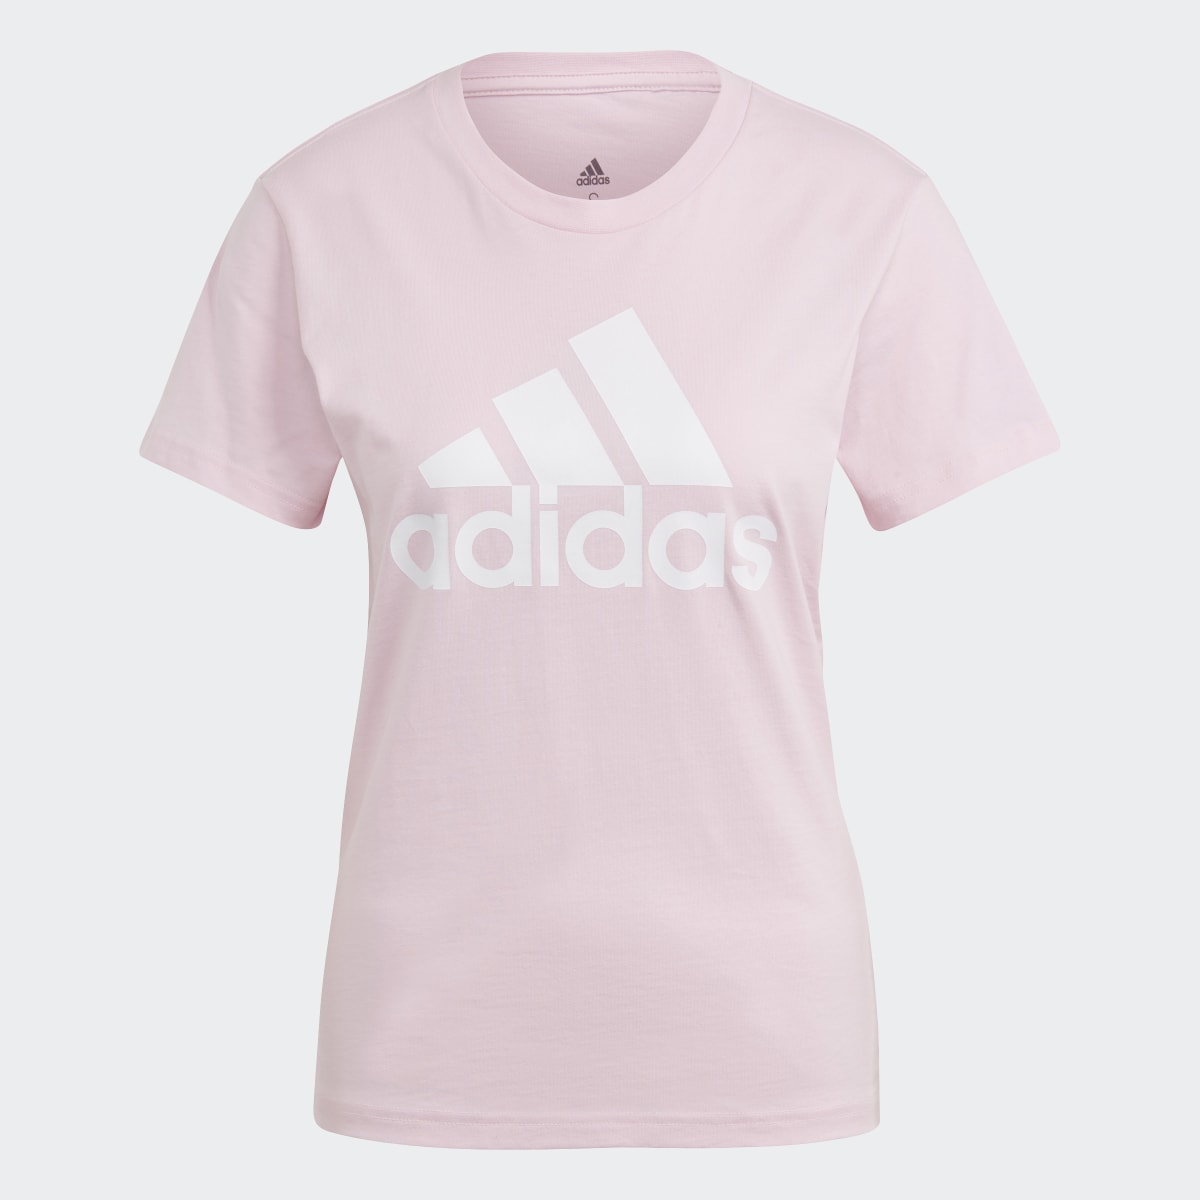 Adidas Essentials Logo T-Shirt. 5